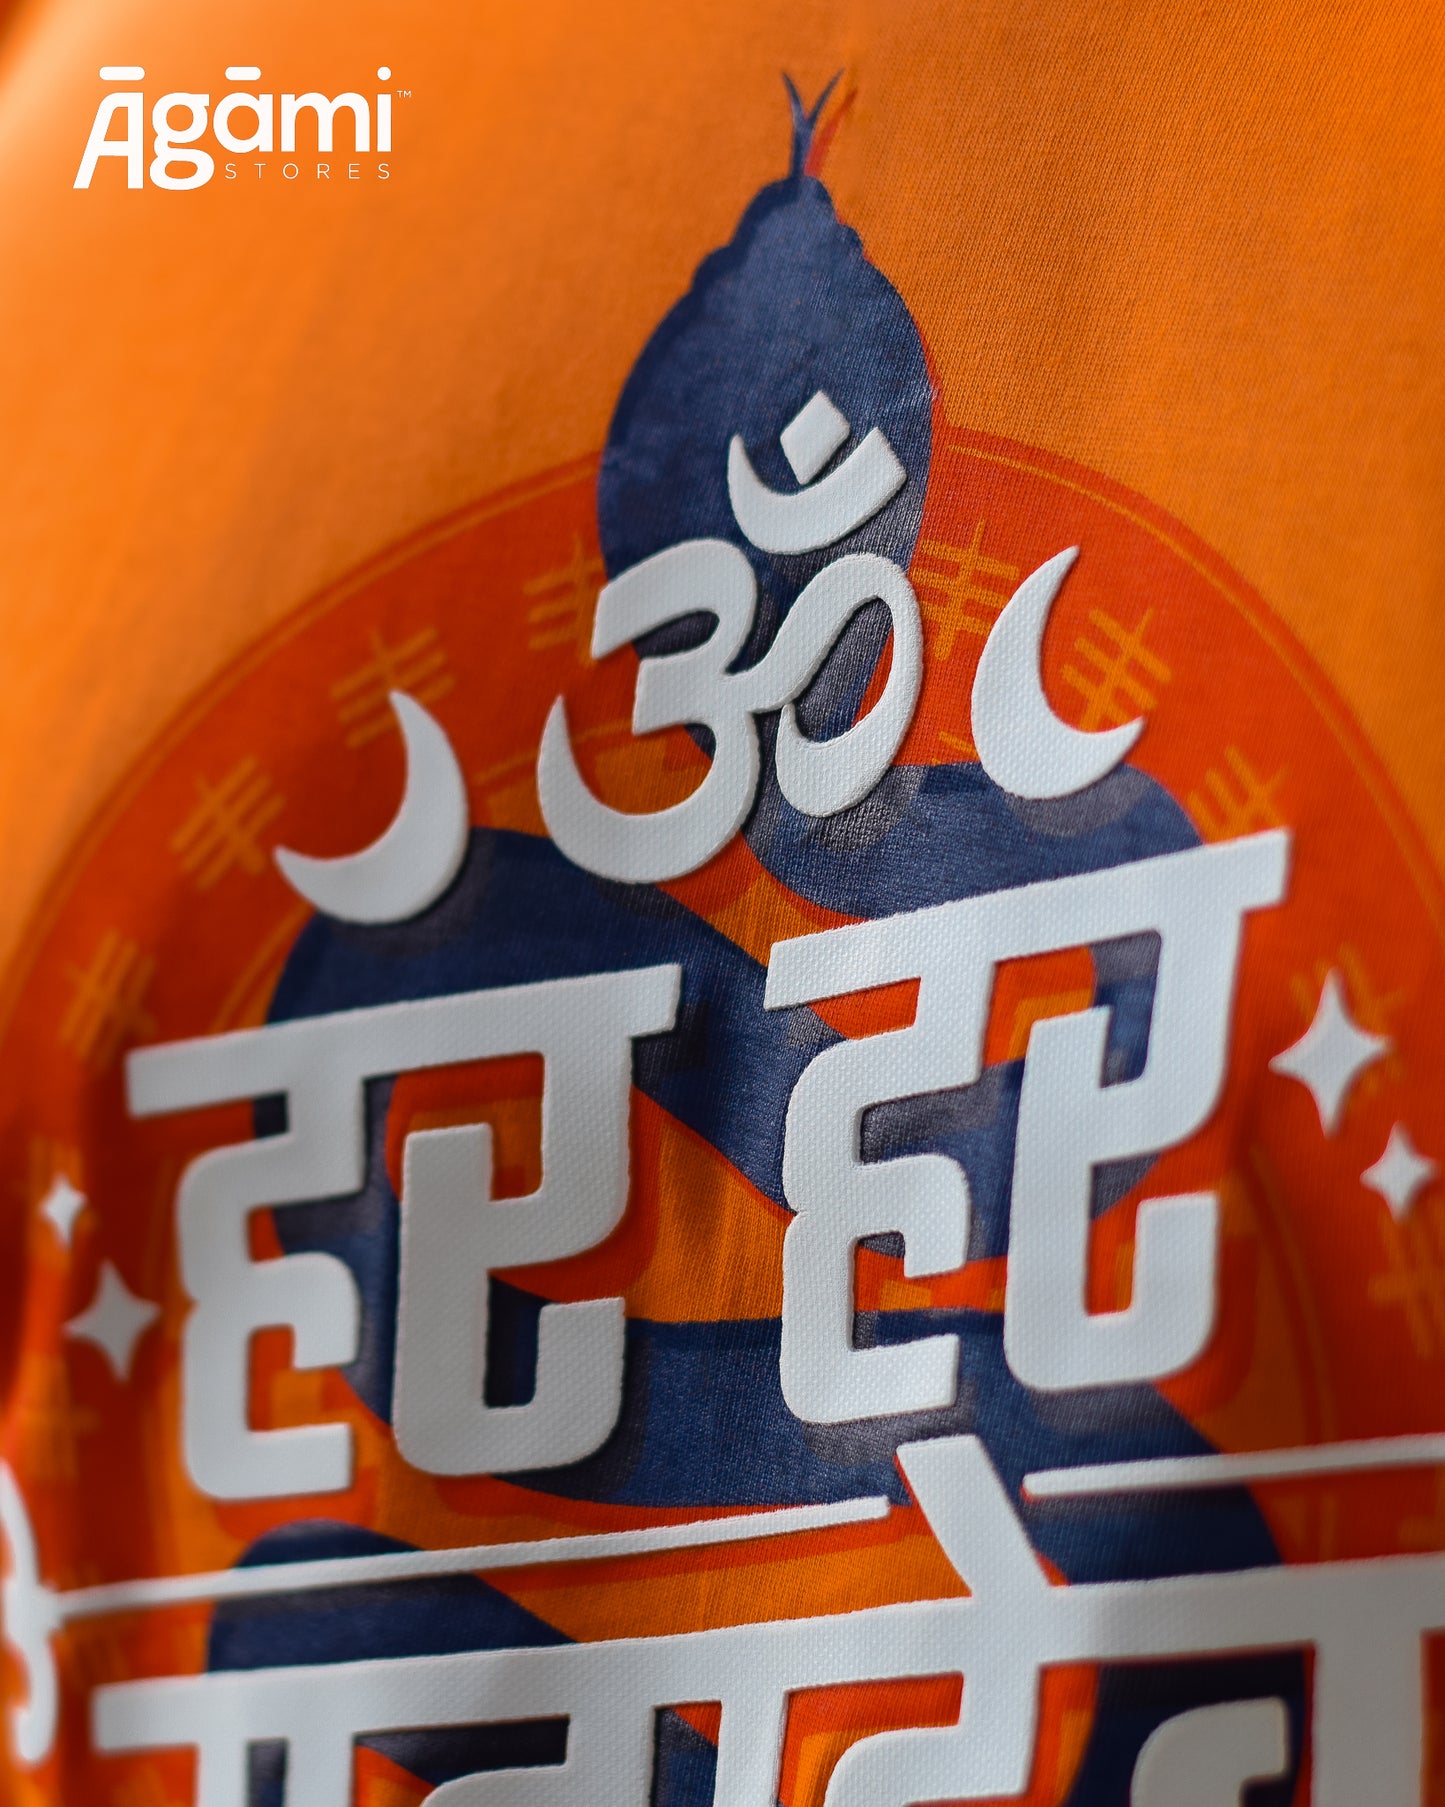 Har Har Mahadev Full Sleeves Tshirt - Orange | Regular Fit